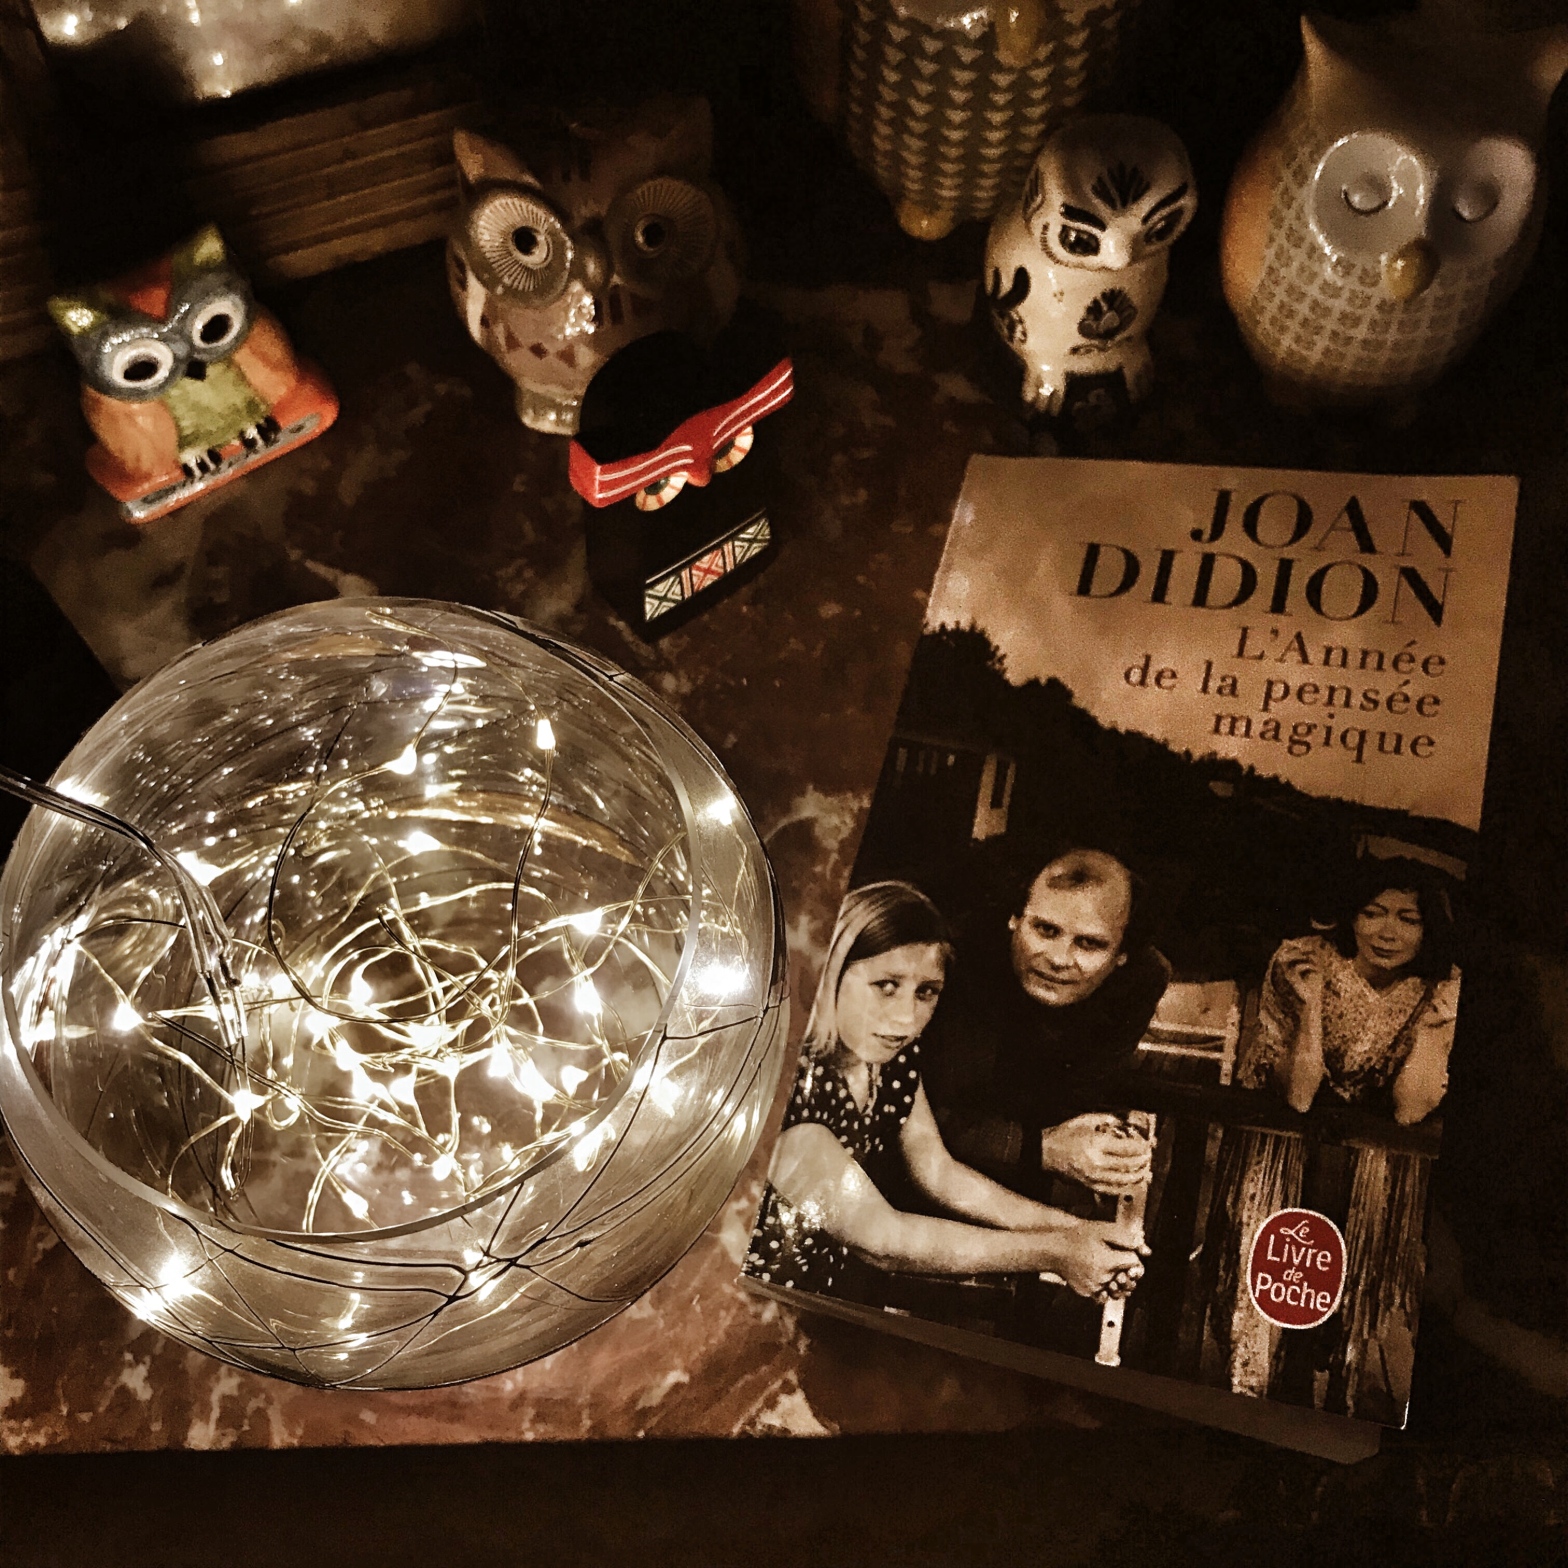 L'année de la pensée magique, de Joan Didion : l'indicible du deuil